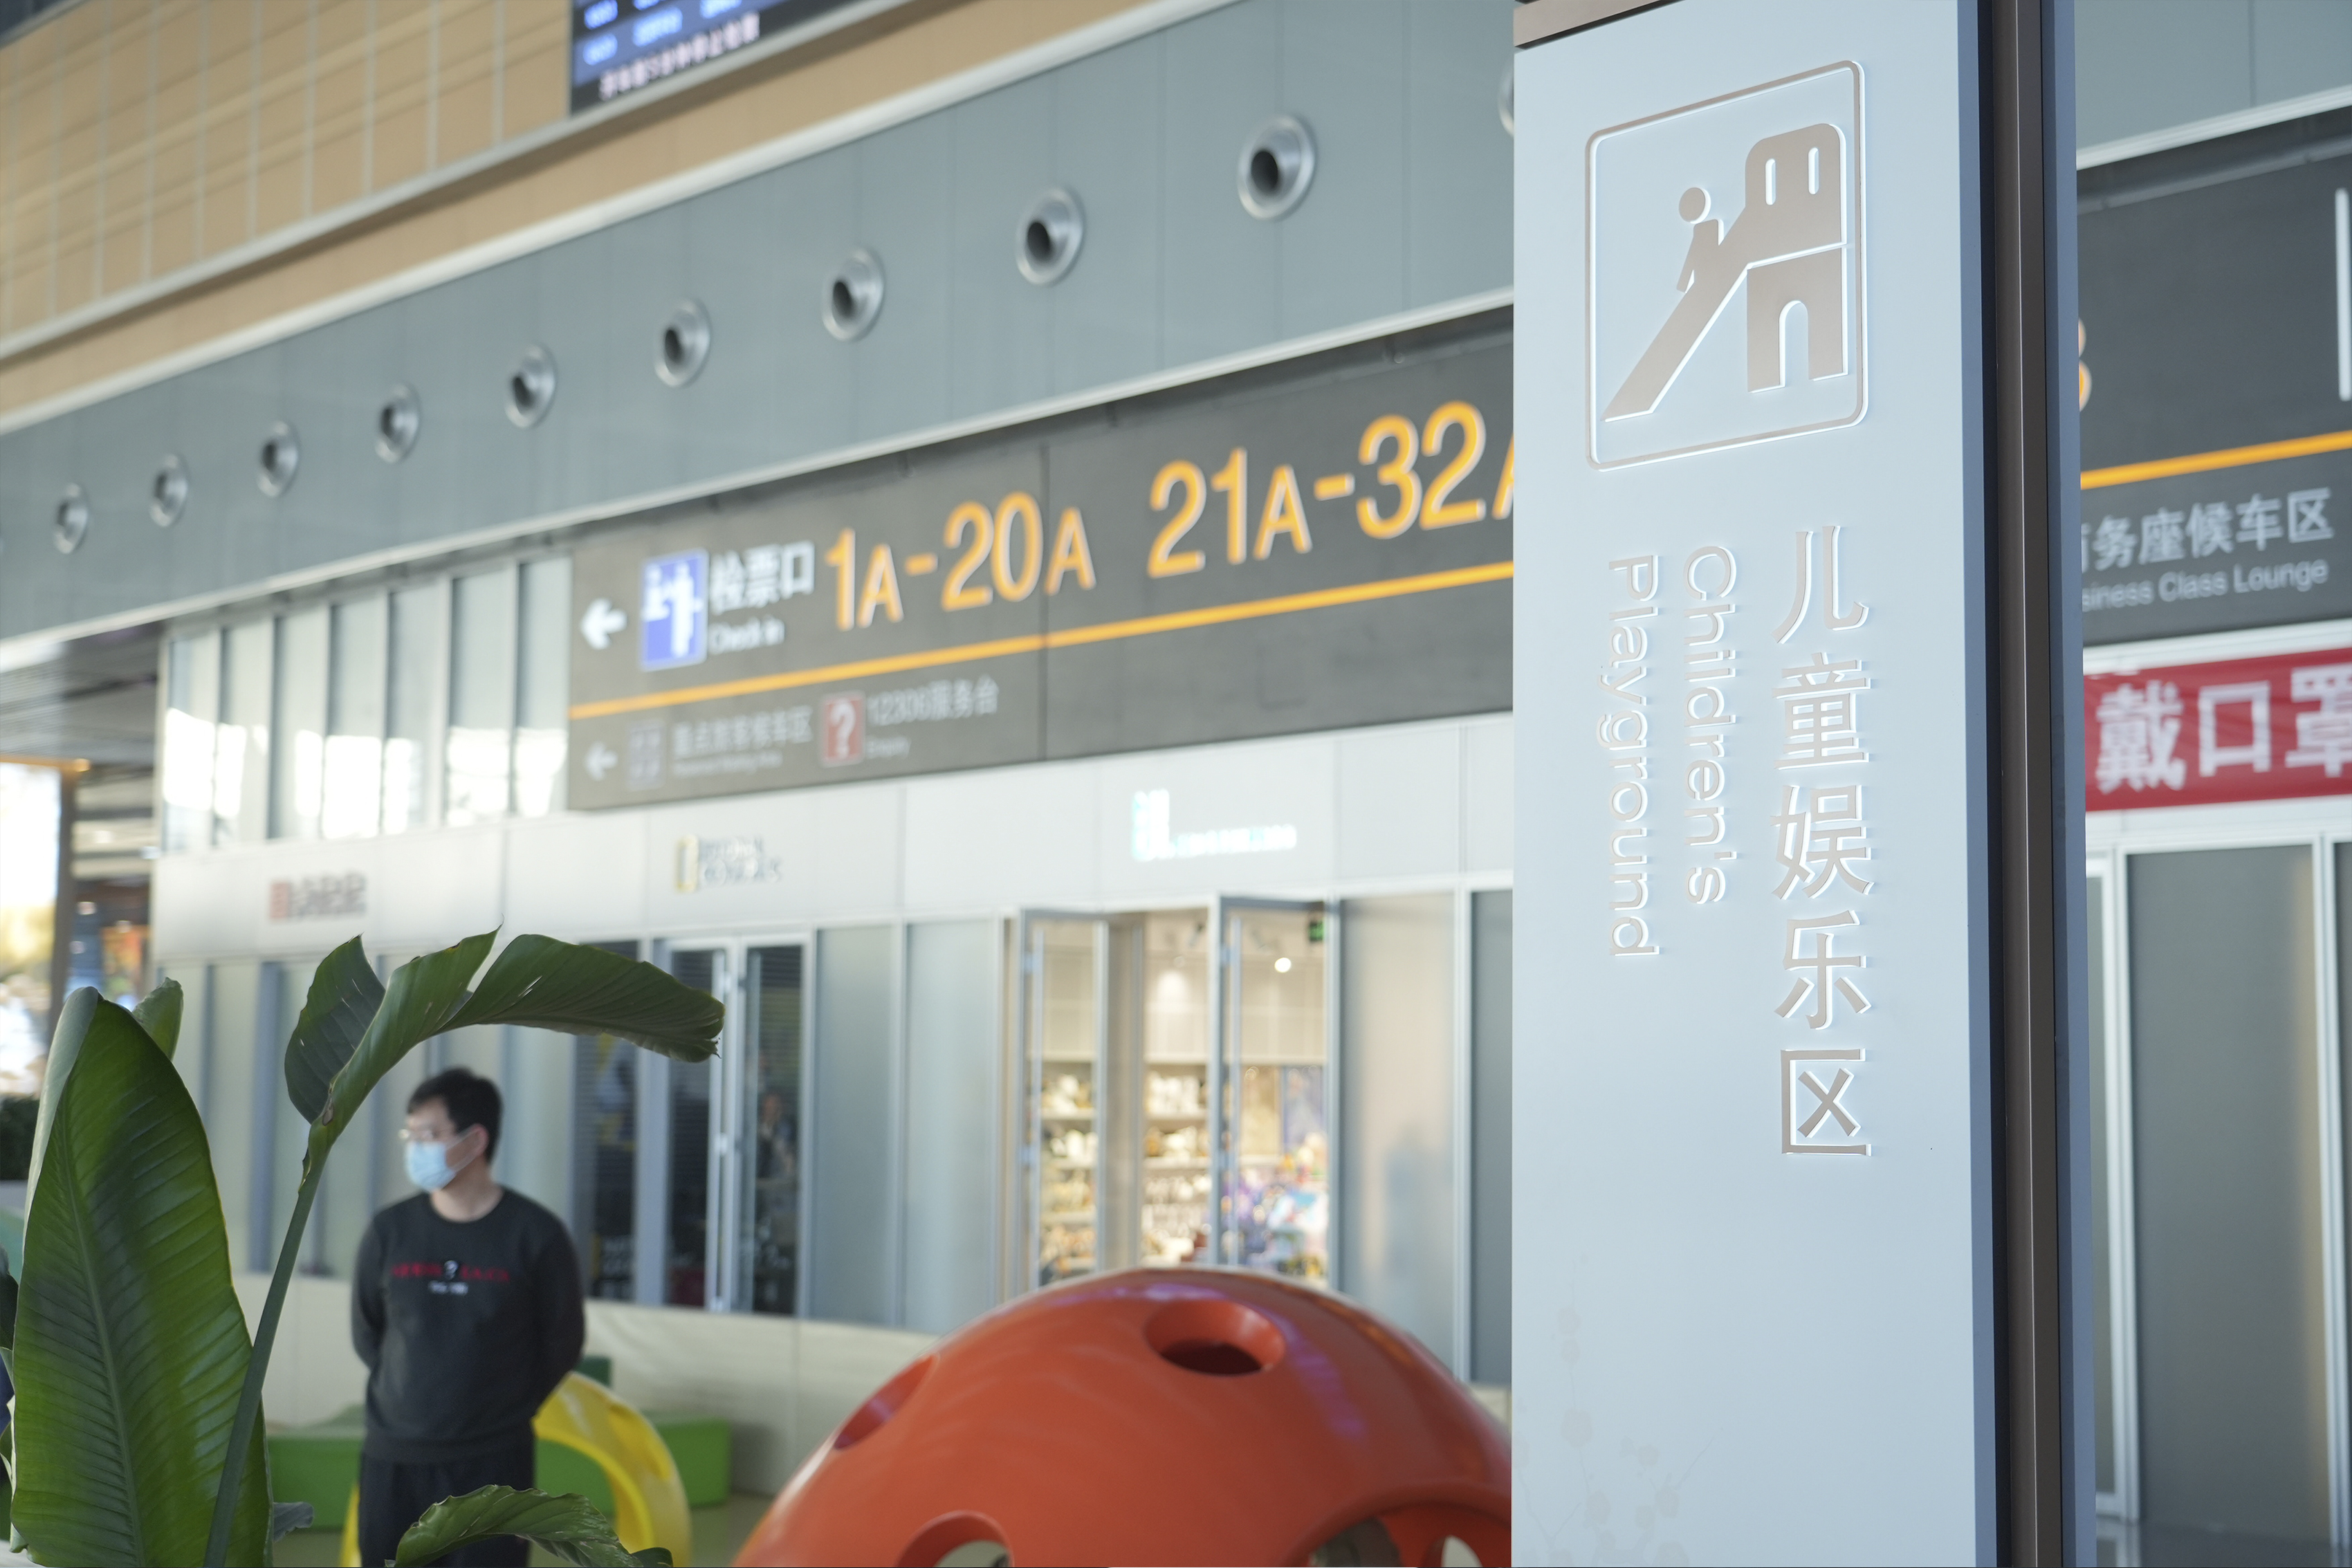 【春运进行时】组图丨北京丰台站迎来开通运营后的首次春运